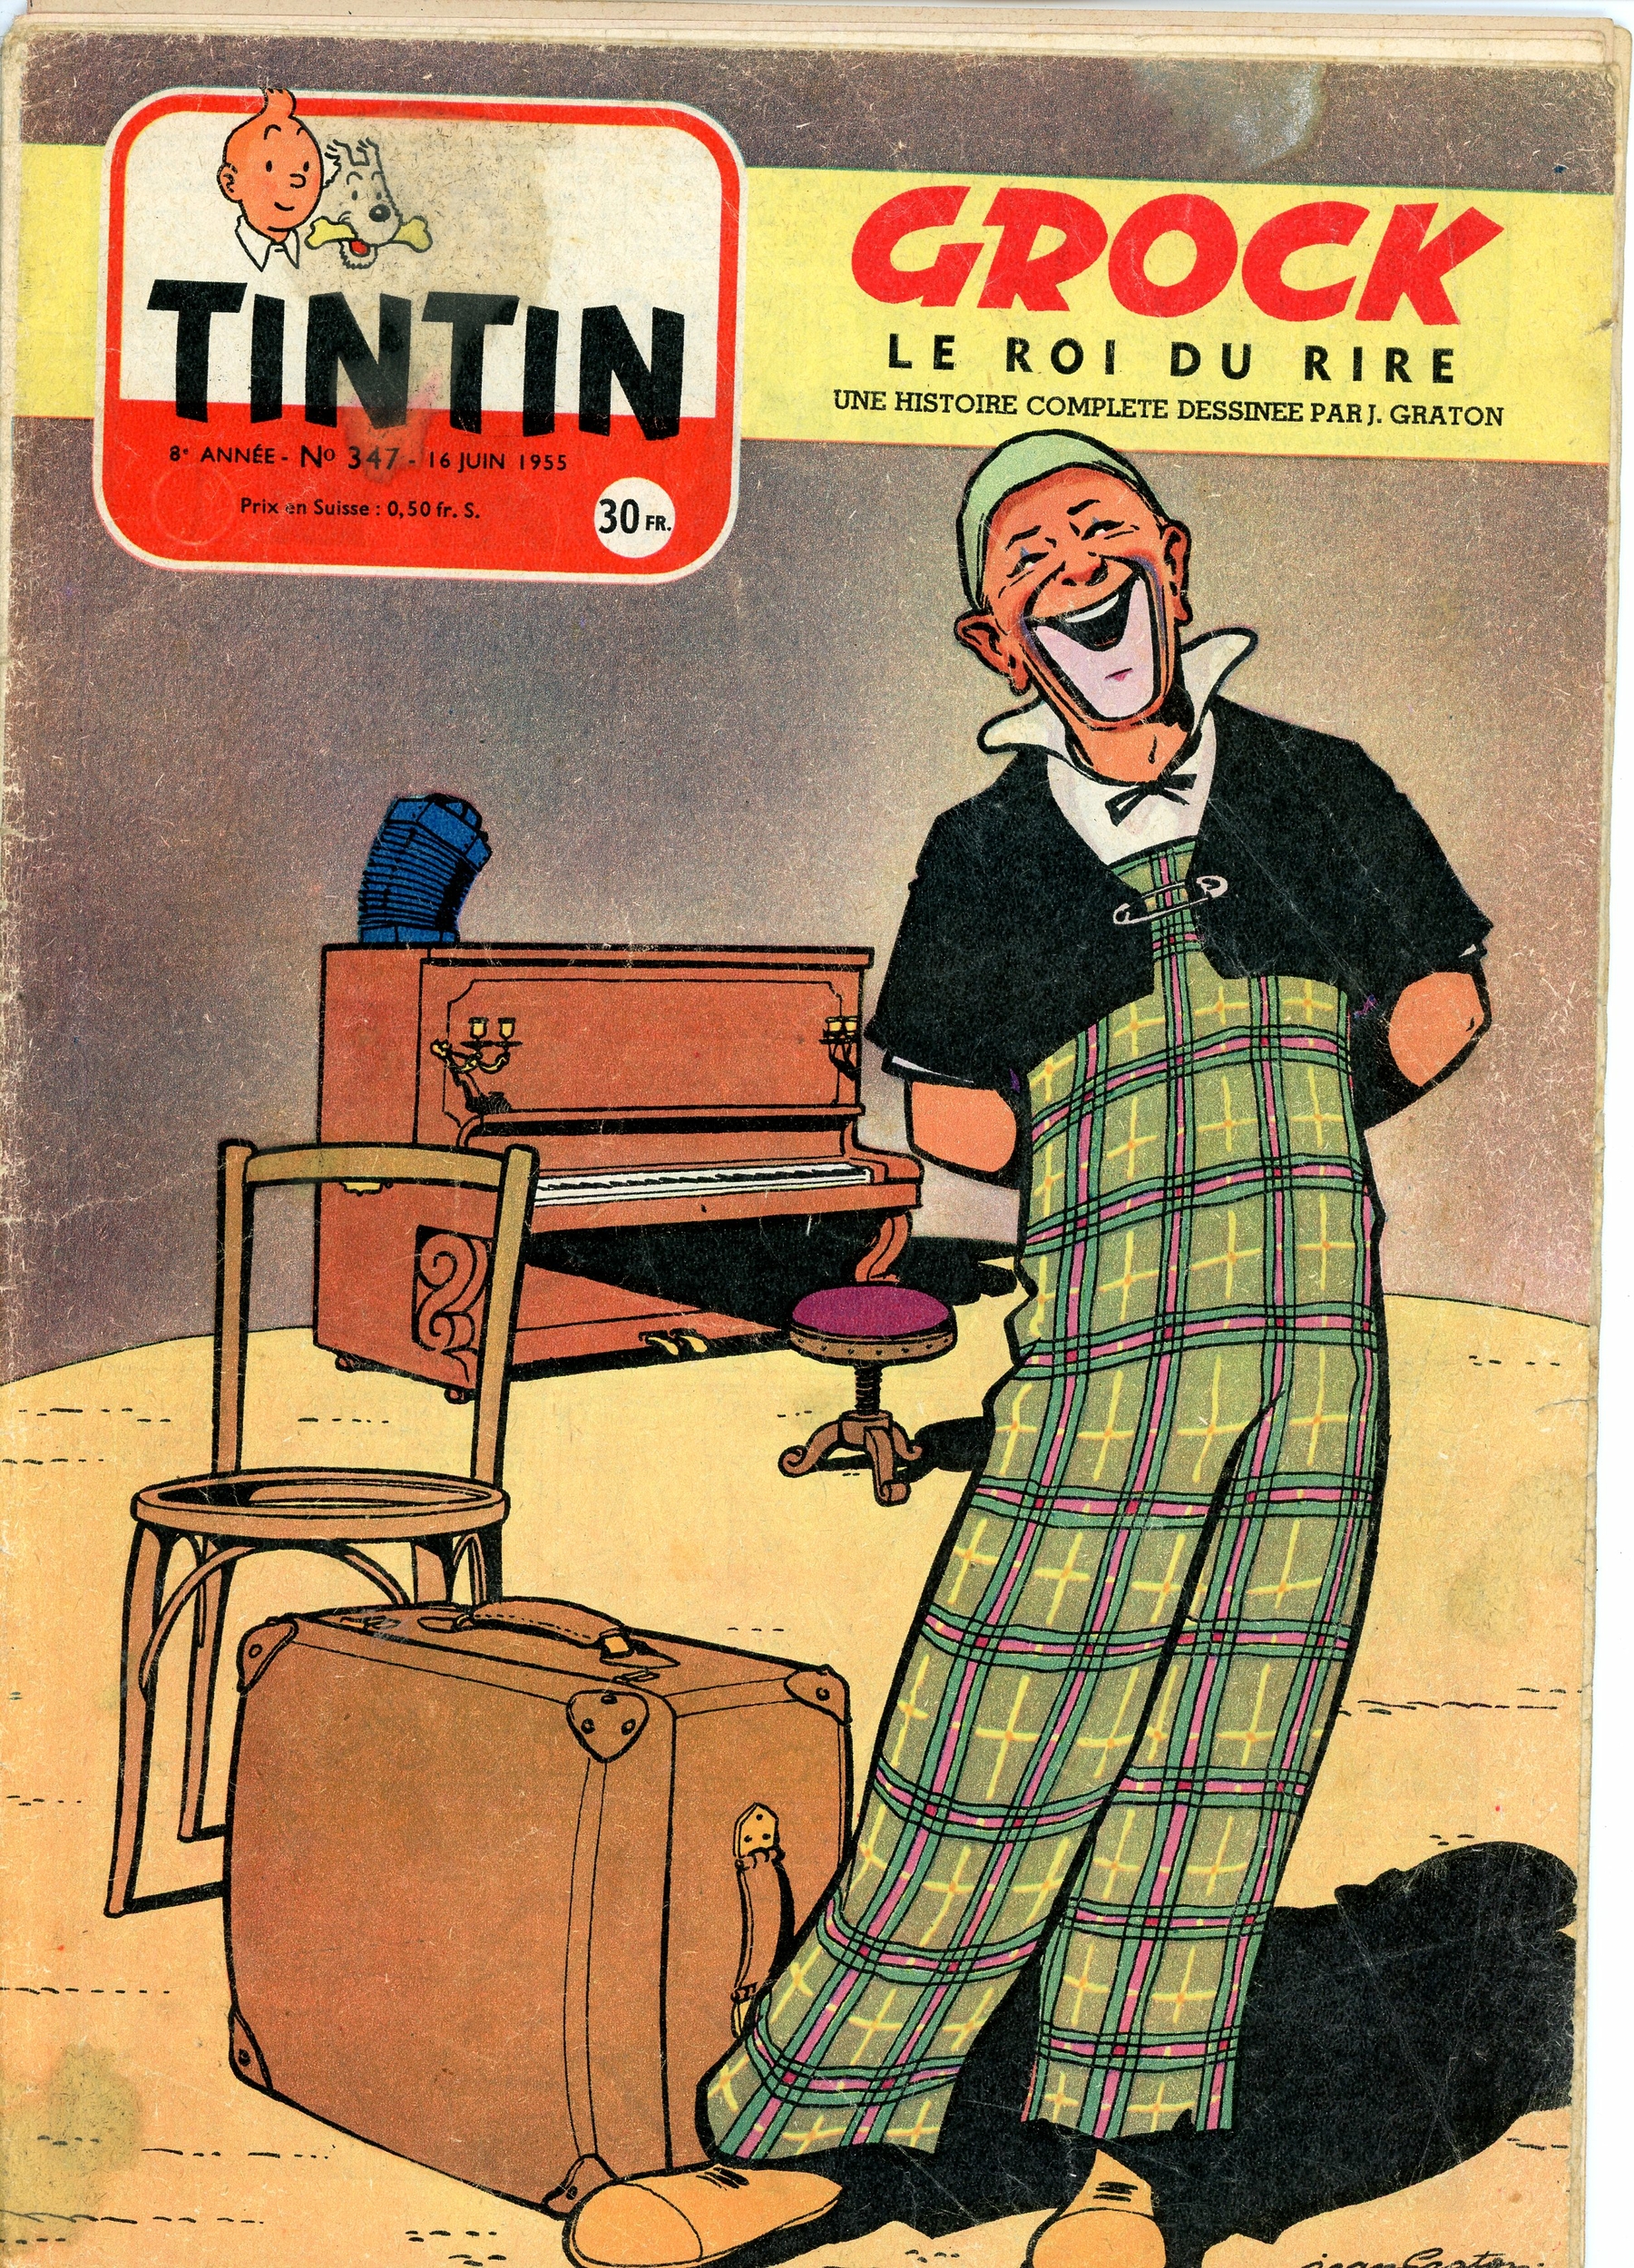 JOURNAL DE TINTIN N°347 - 16 JUIN 1955 - L'AFFAIRE TOURNESOL PAR HERGE